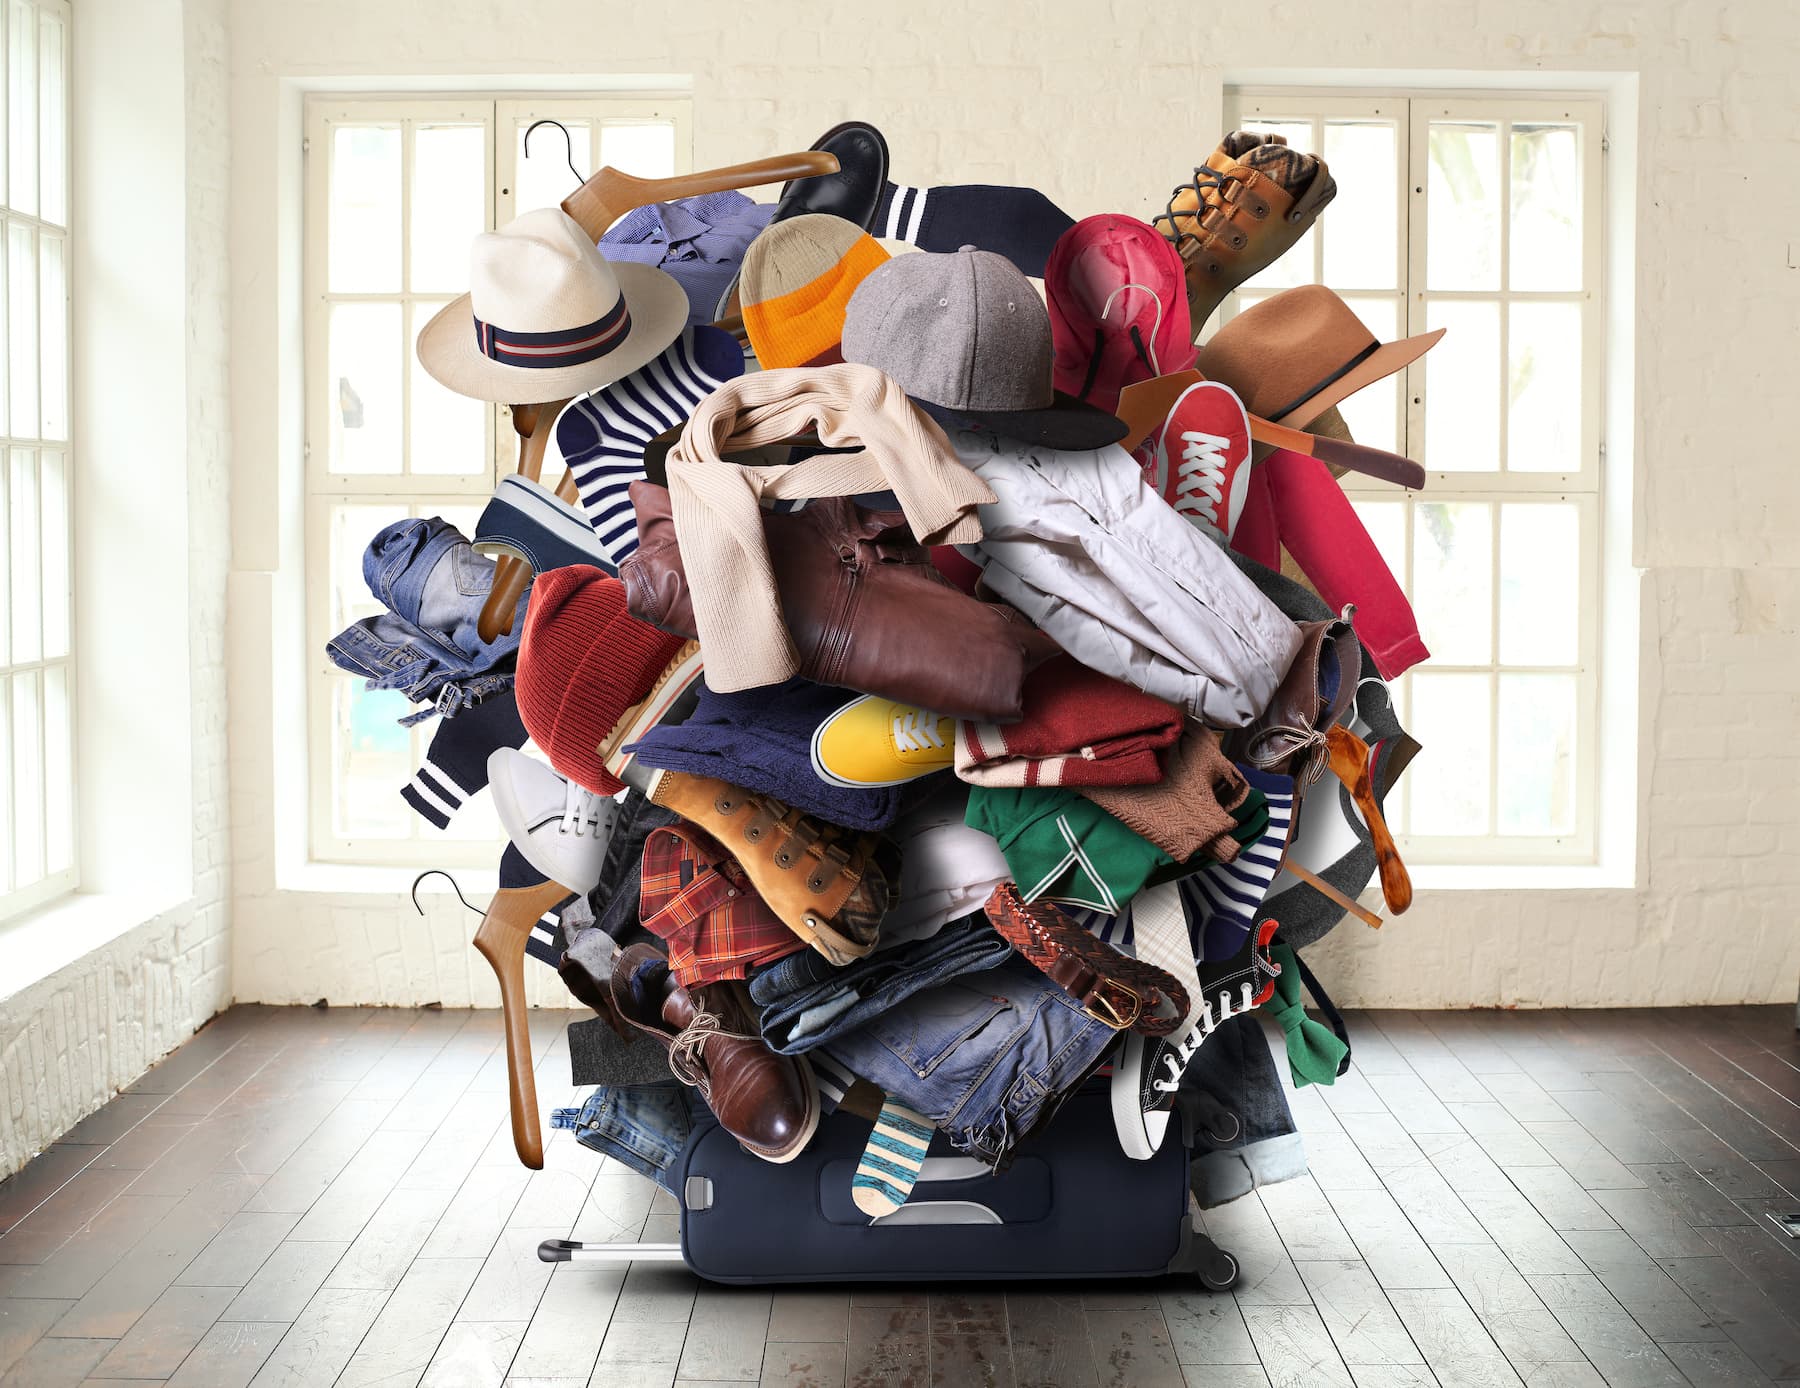 Poradnik ergonomicznego składania. Jak składać ubrania i zaoszczędzić miejsce w szafie?